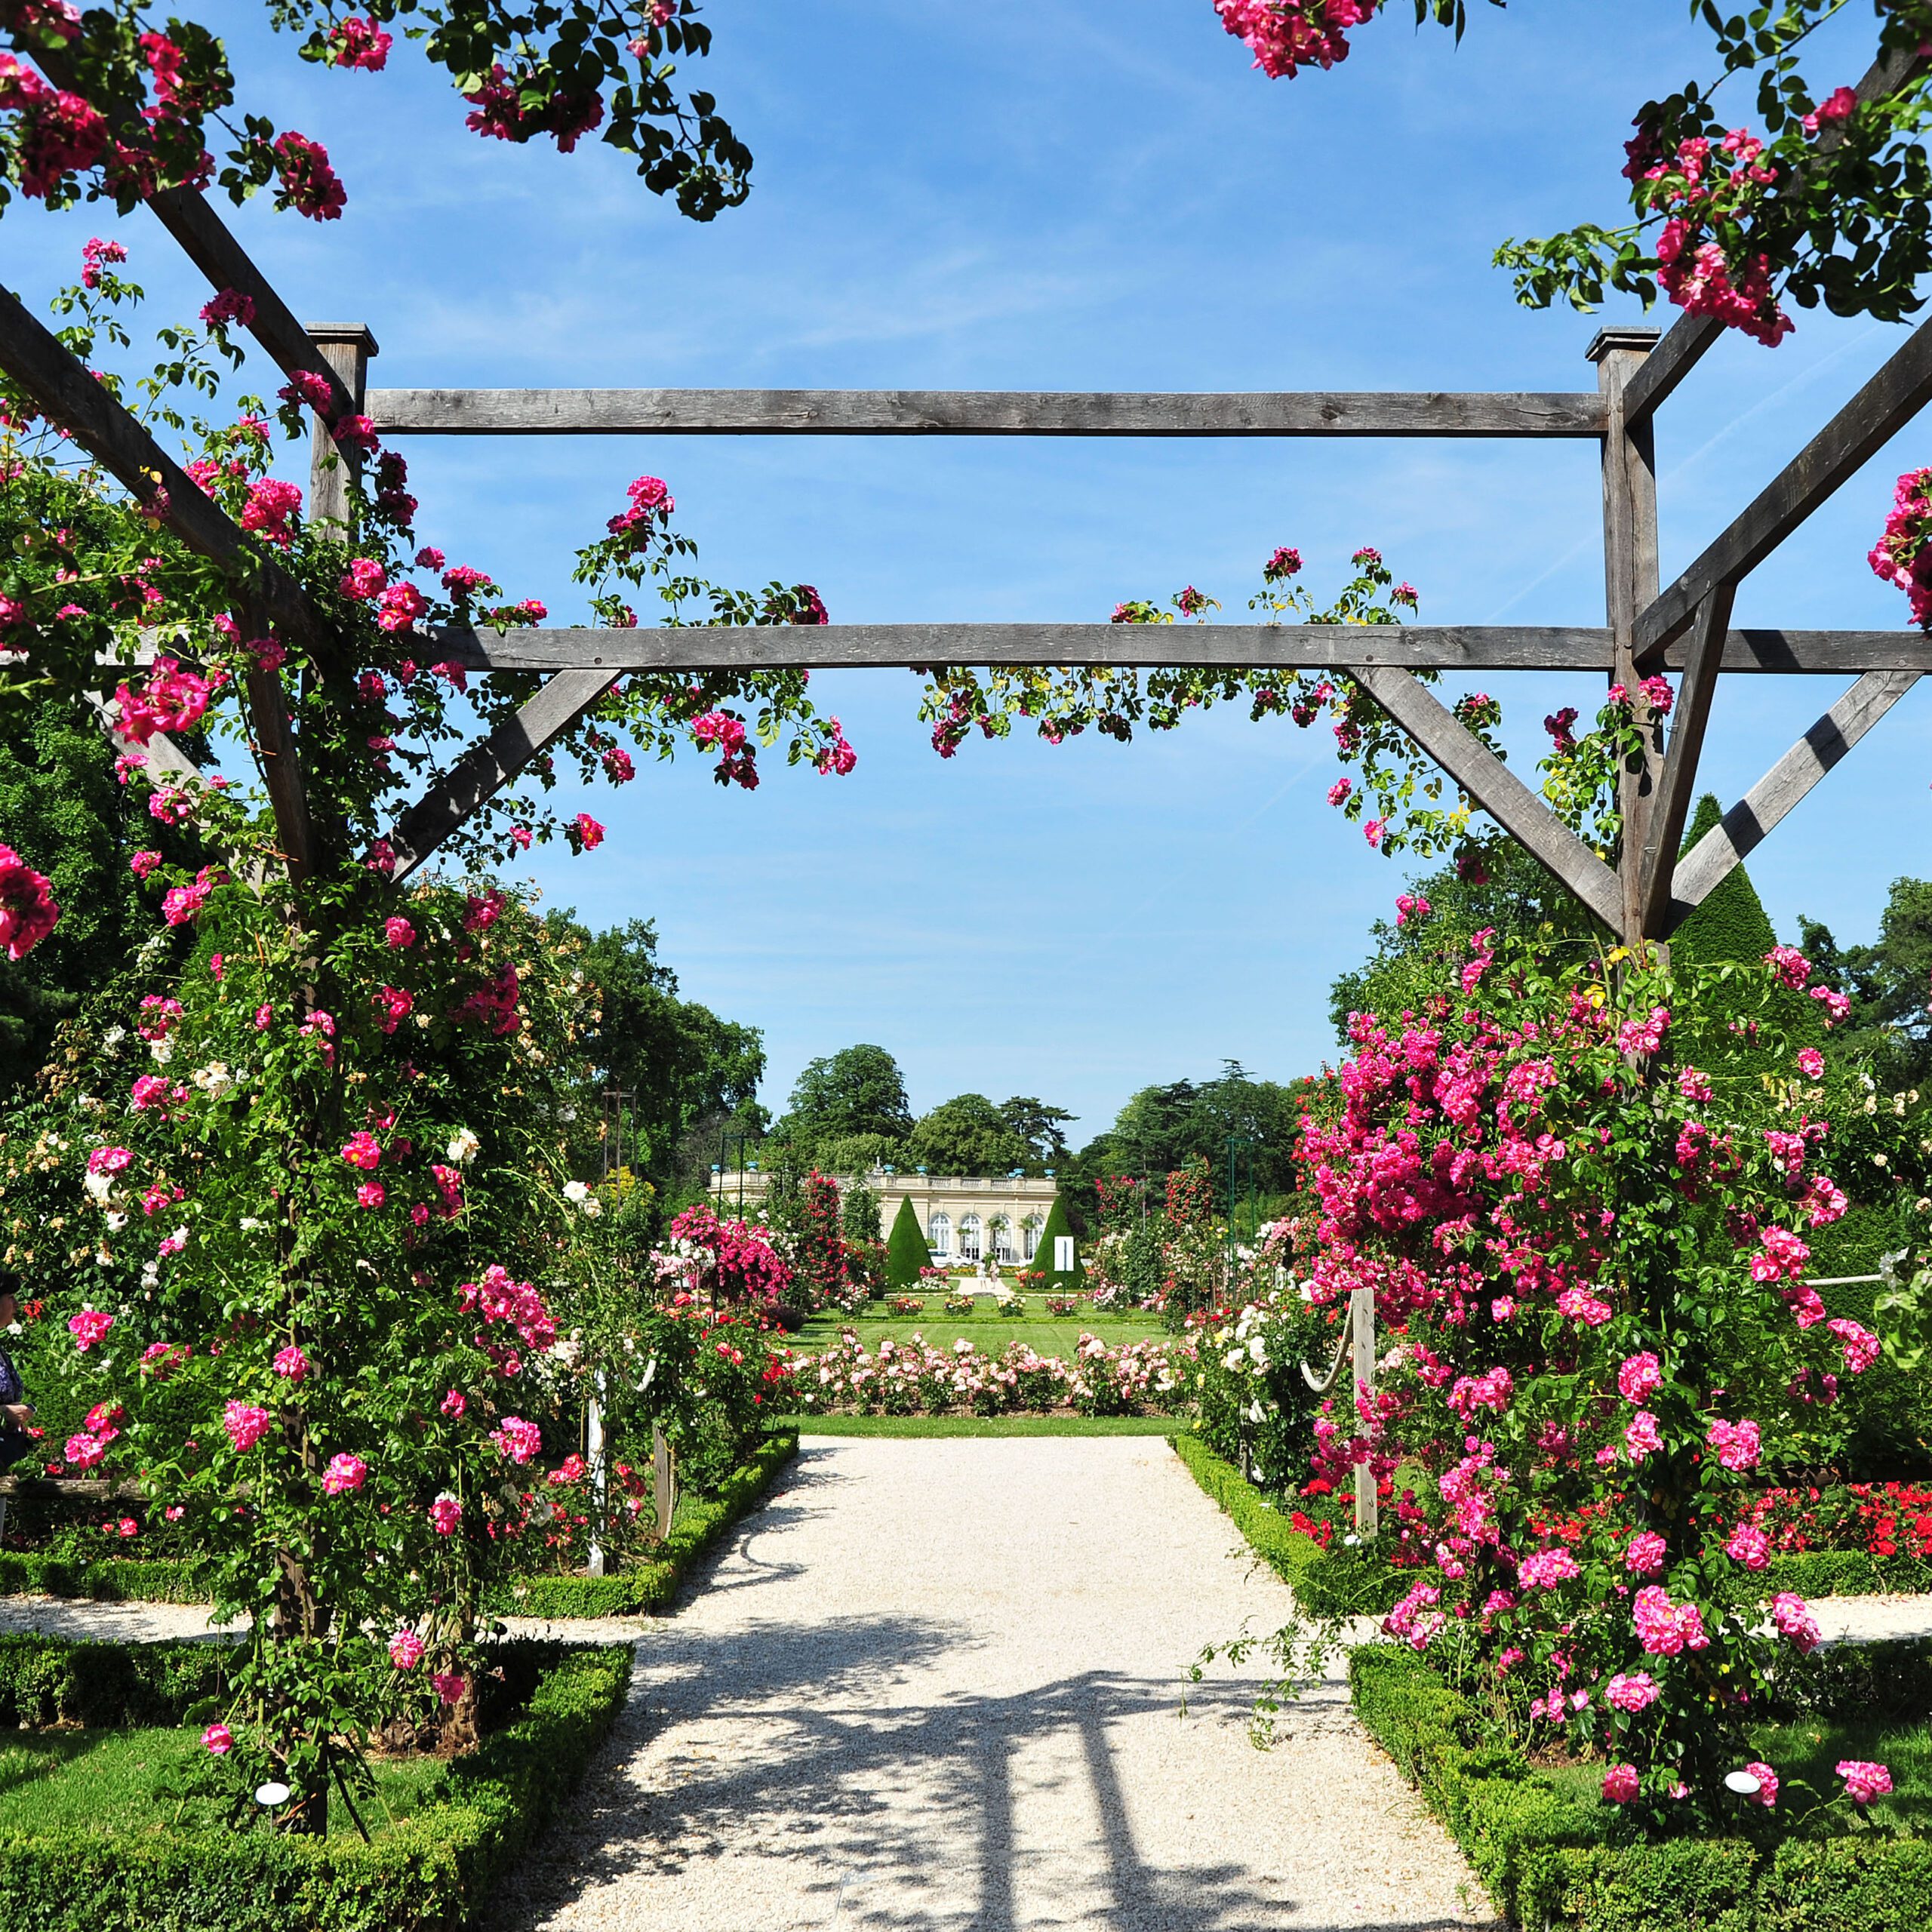 Bois de Boulogne, Parc de Bagatelle, rose garden and orangery. Bagatelle Parc, Paris, France.